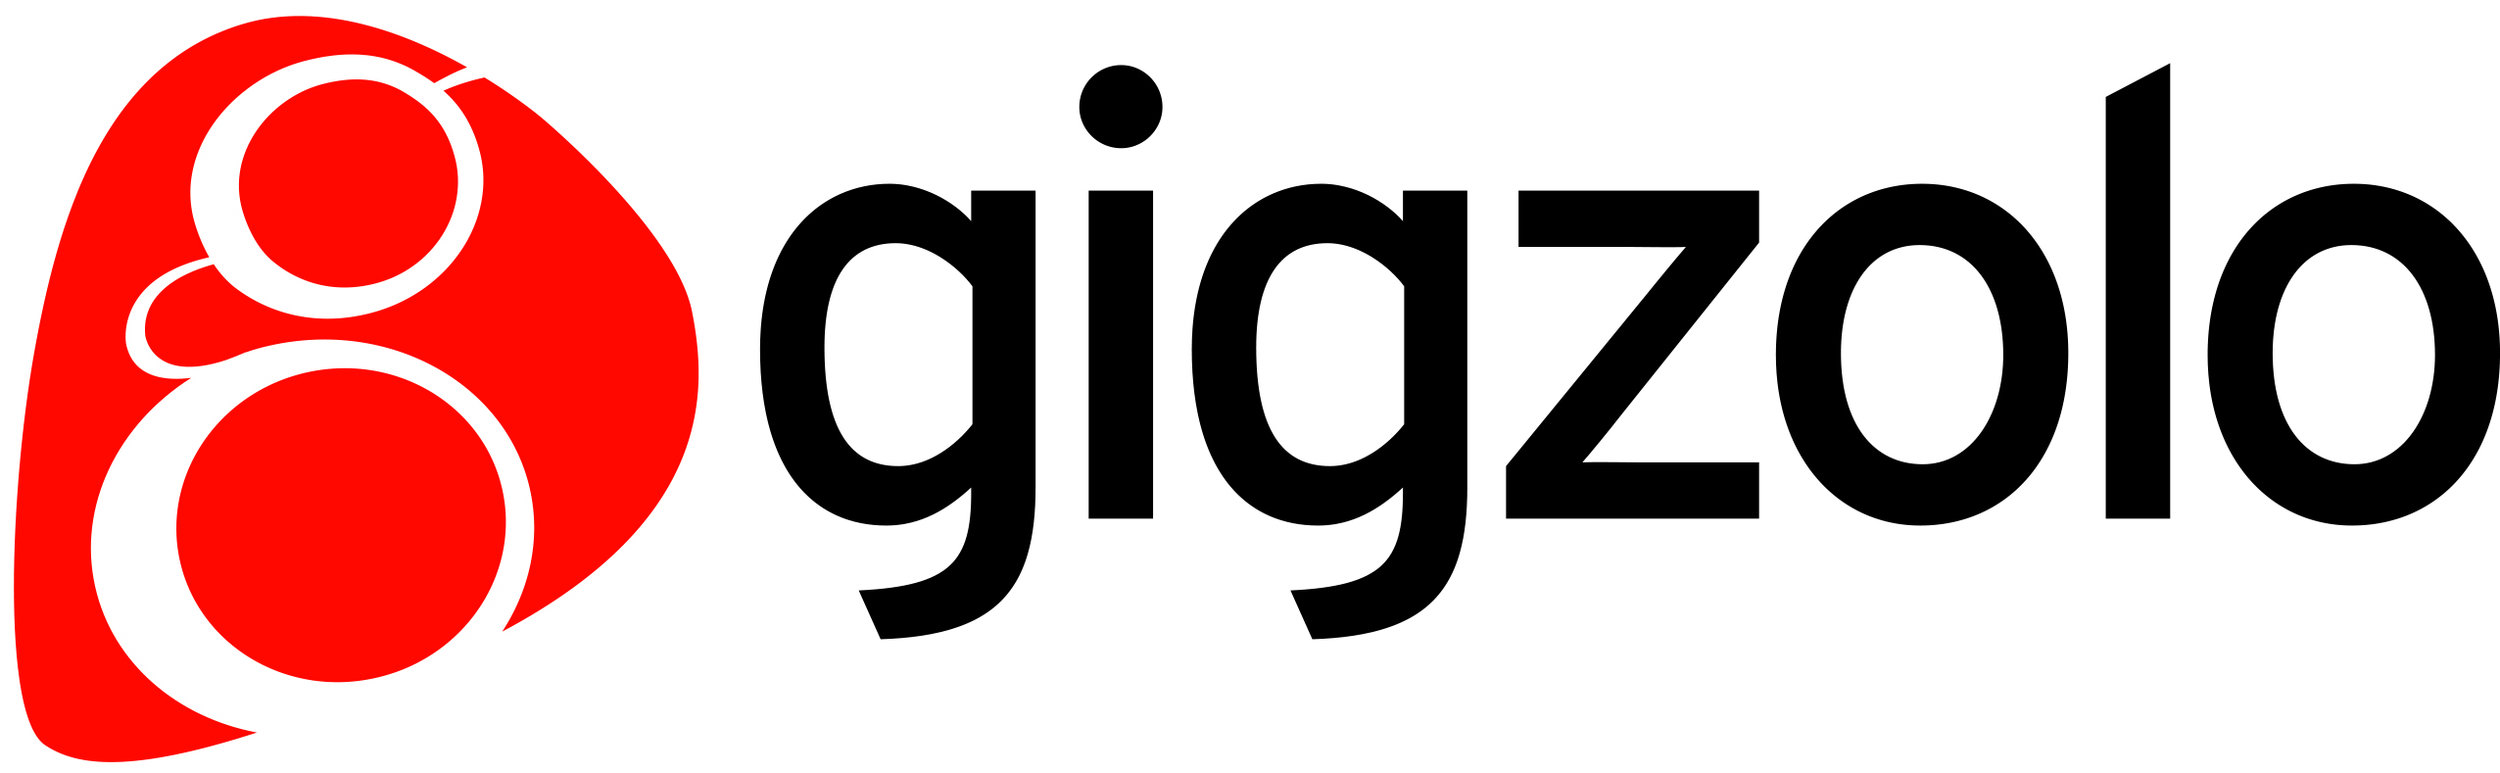 gigzolo_logo.jpg